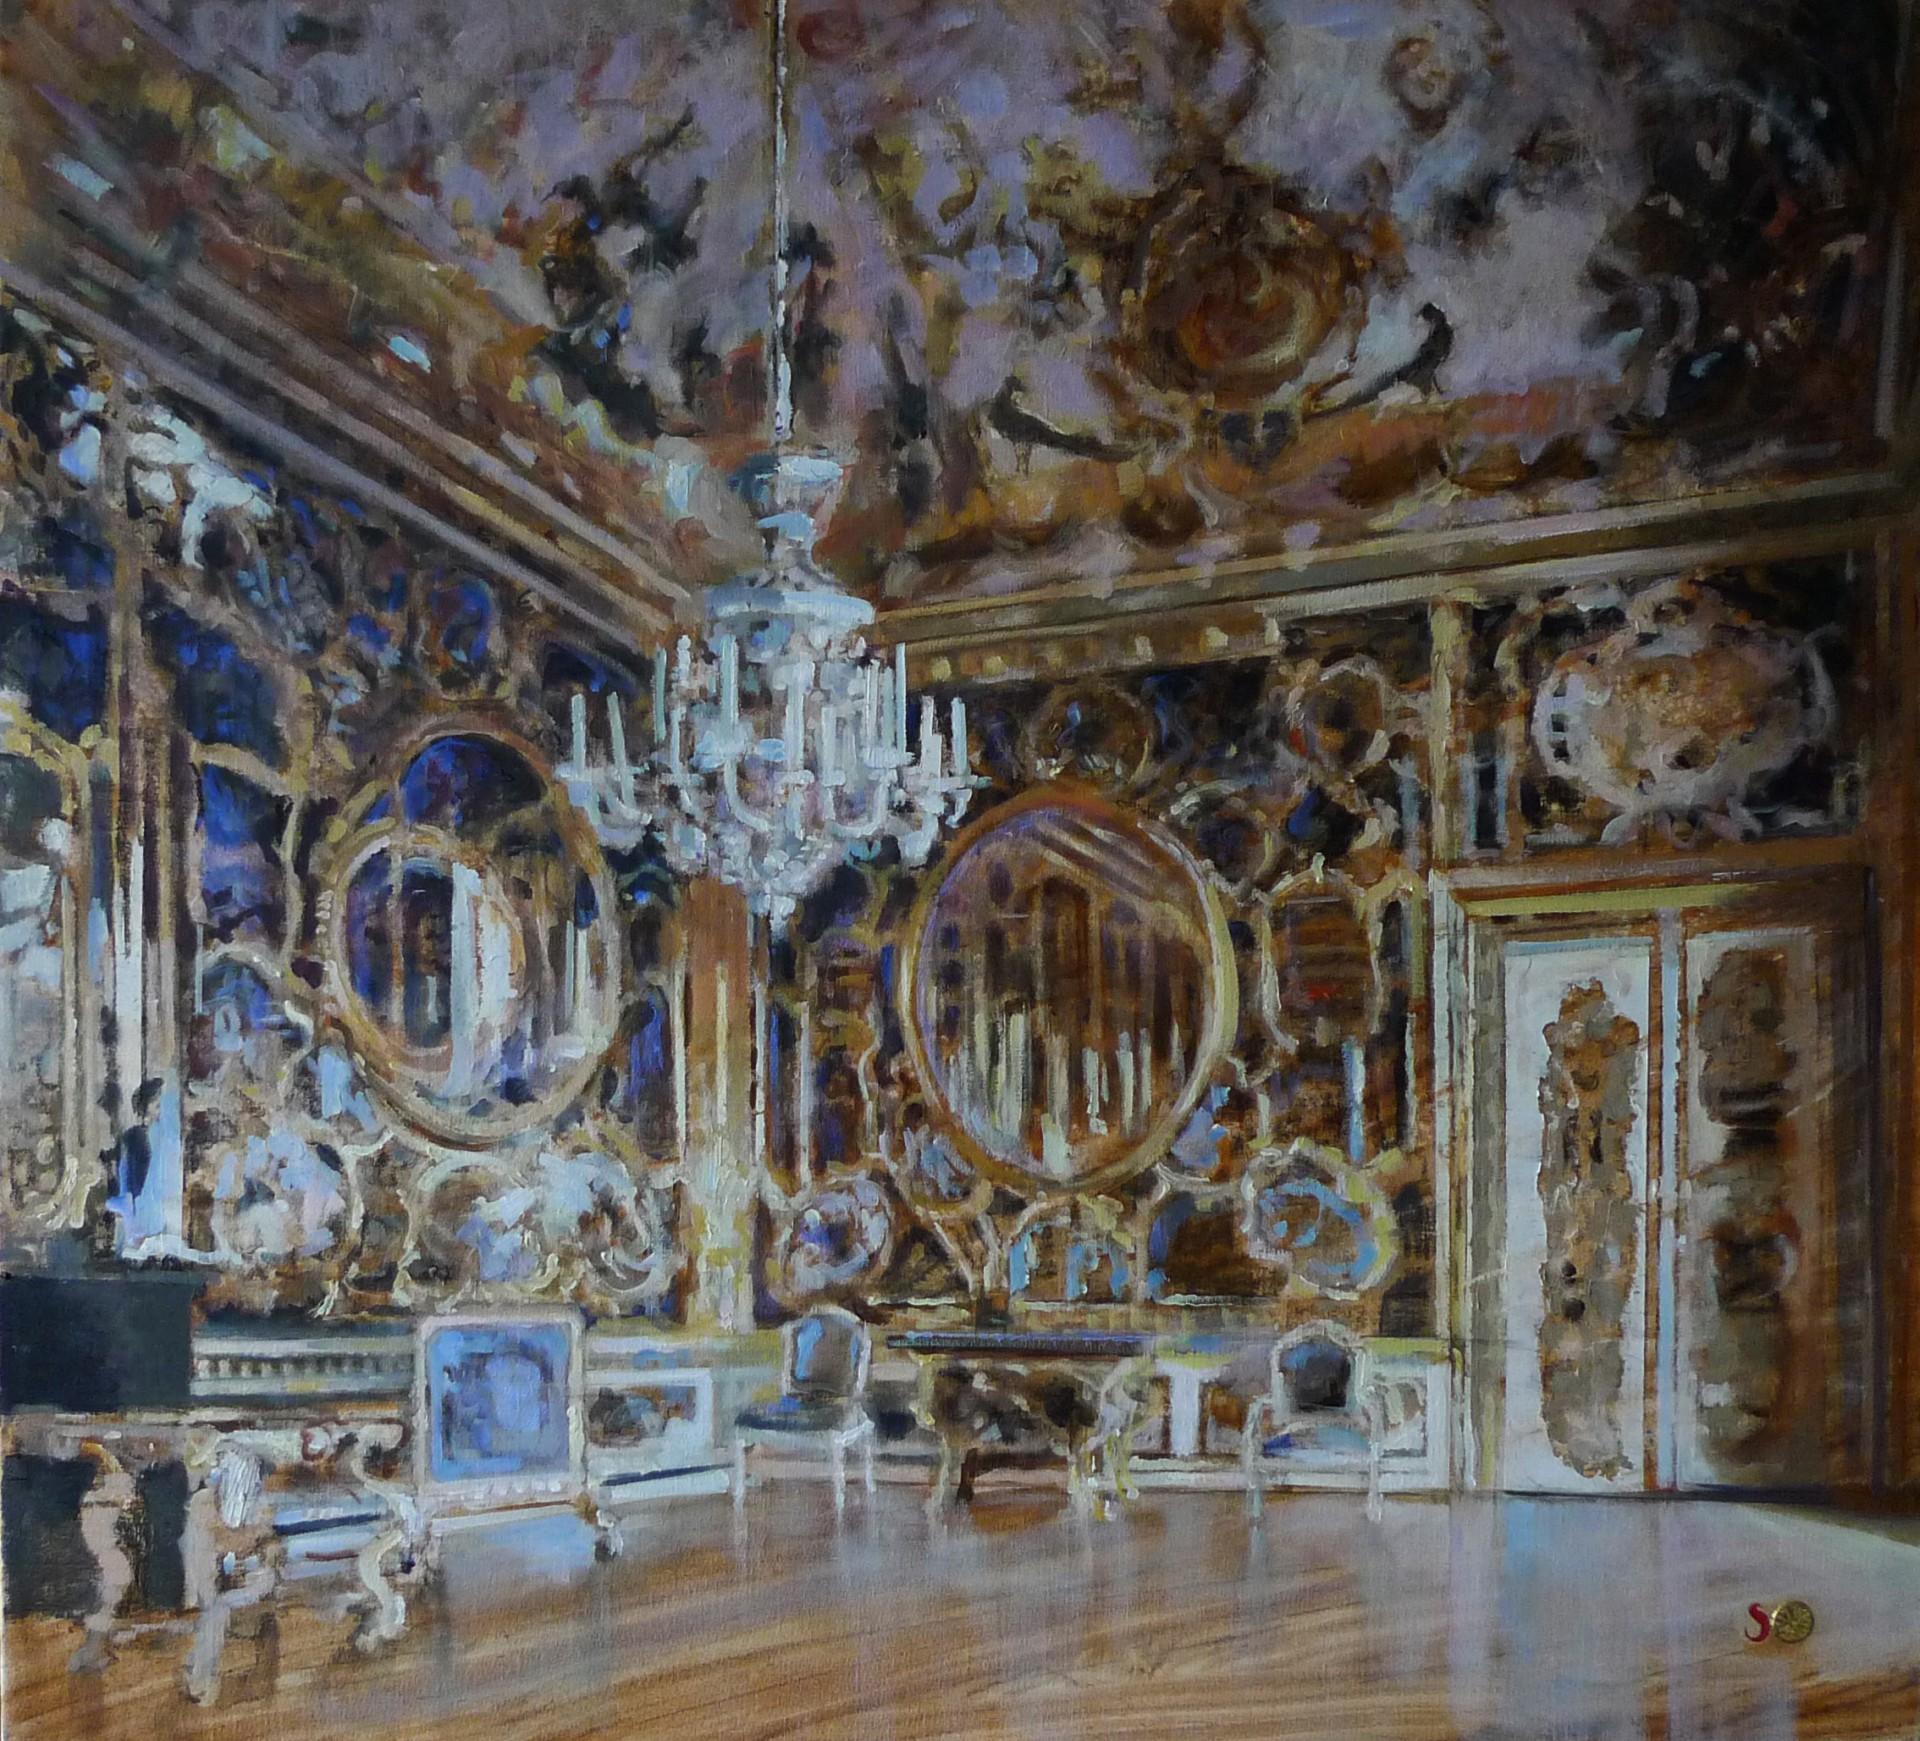 The Painted Room - Peinture à l'huile contemporaine du 21e siècle représentant l'intérieur d'un palais